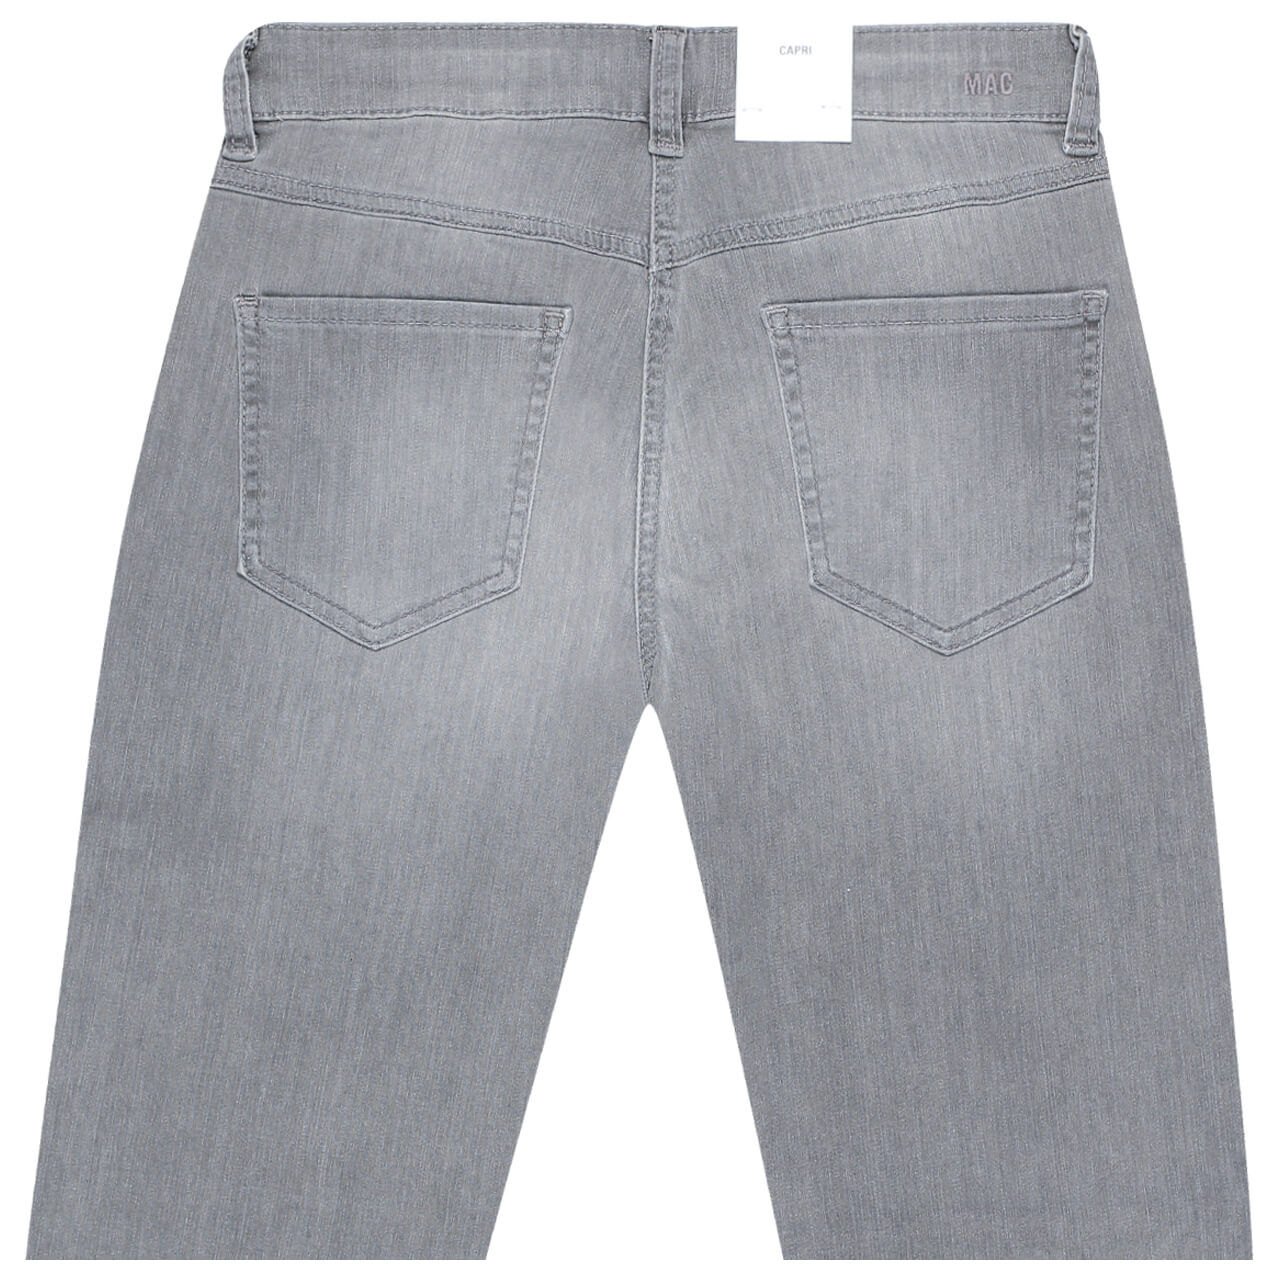 MAC Jeans Capri für Damen in Grau angewaschen, FarbNr.: D361